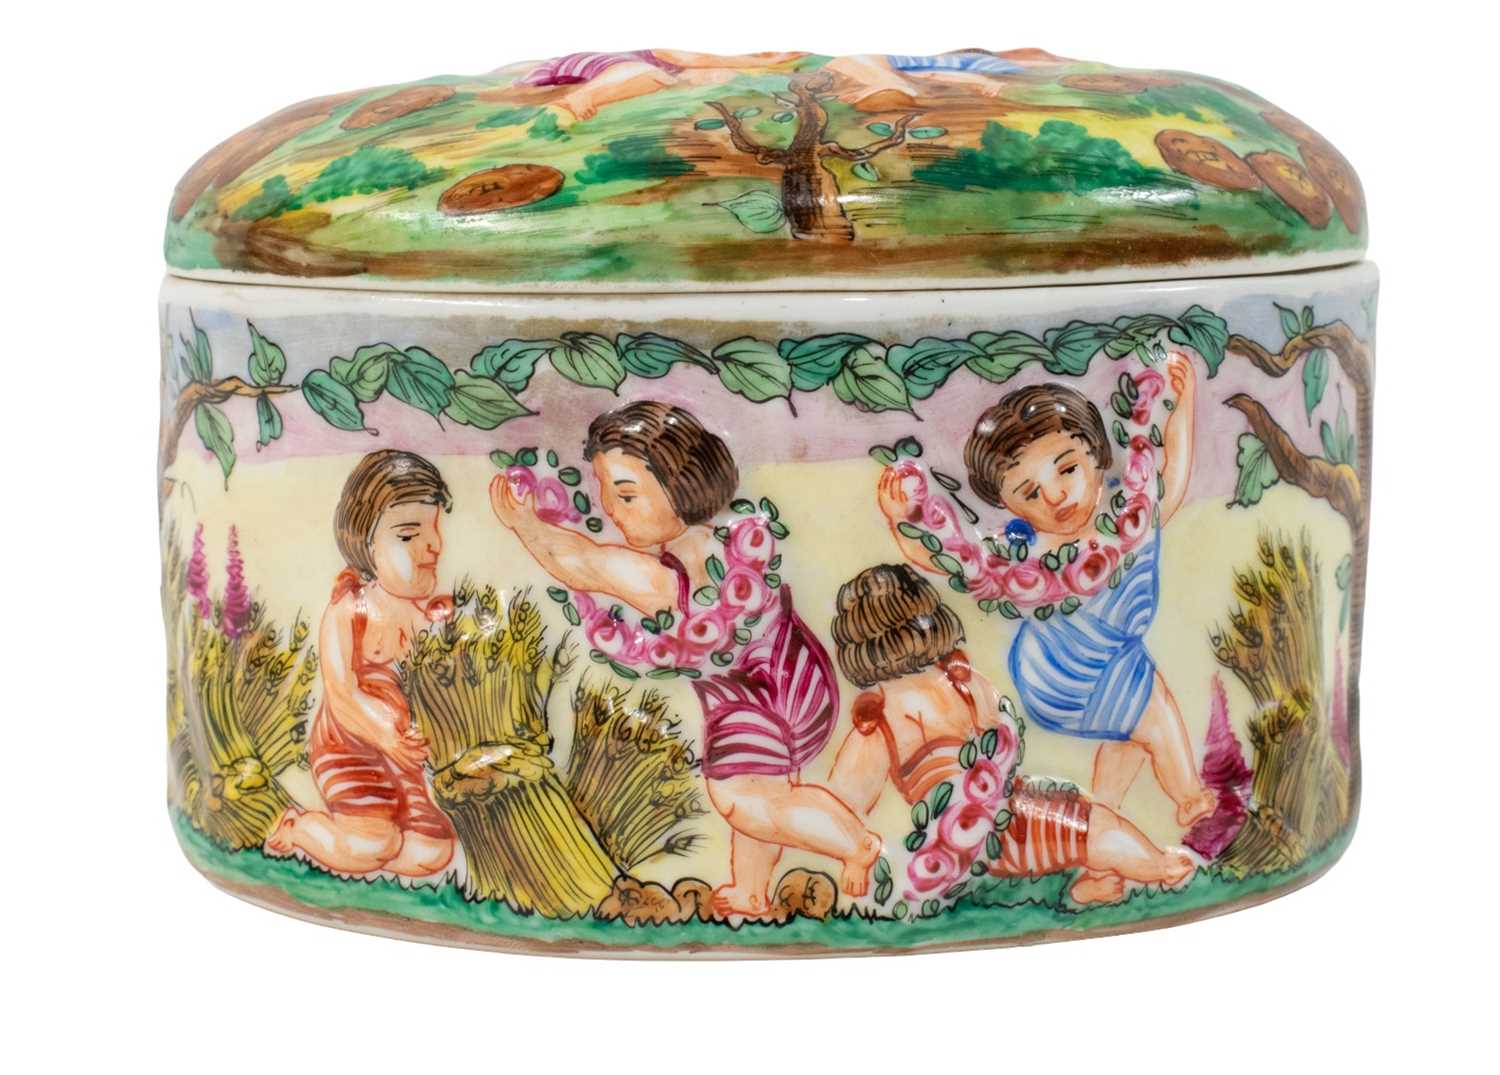 Capodimonte Style Porcelain Trinket Box